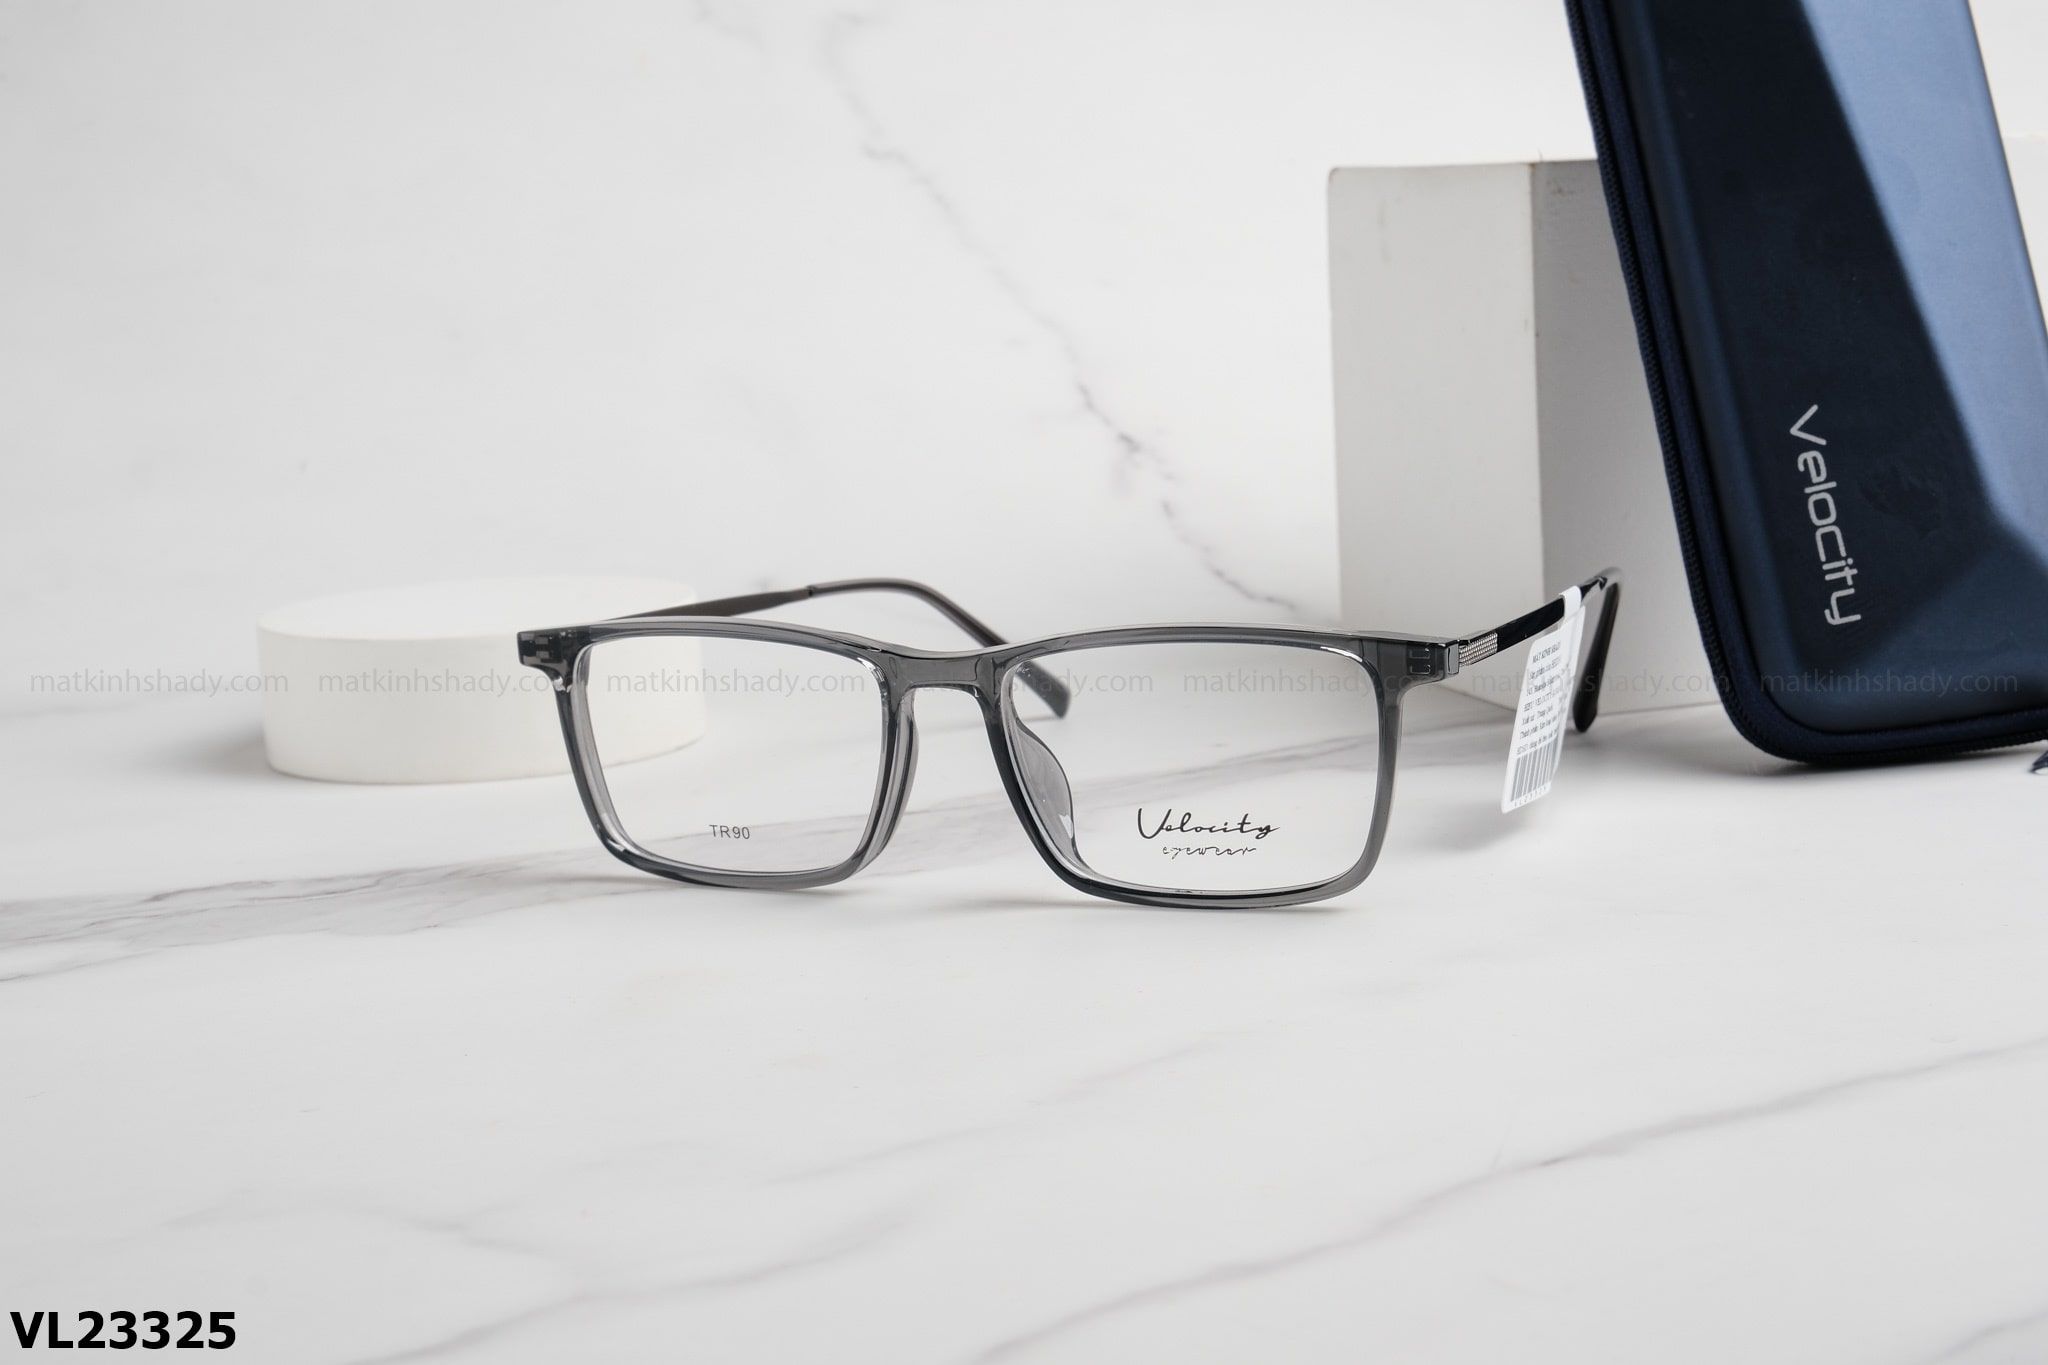  Velocity Eyewear - Glasses - VL23325 